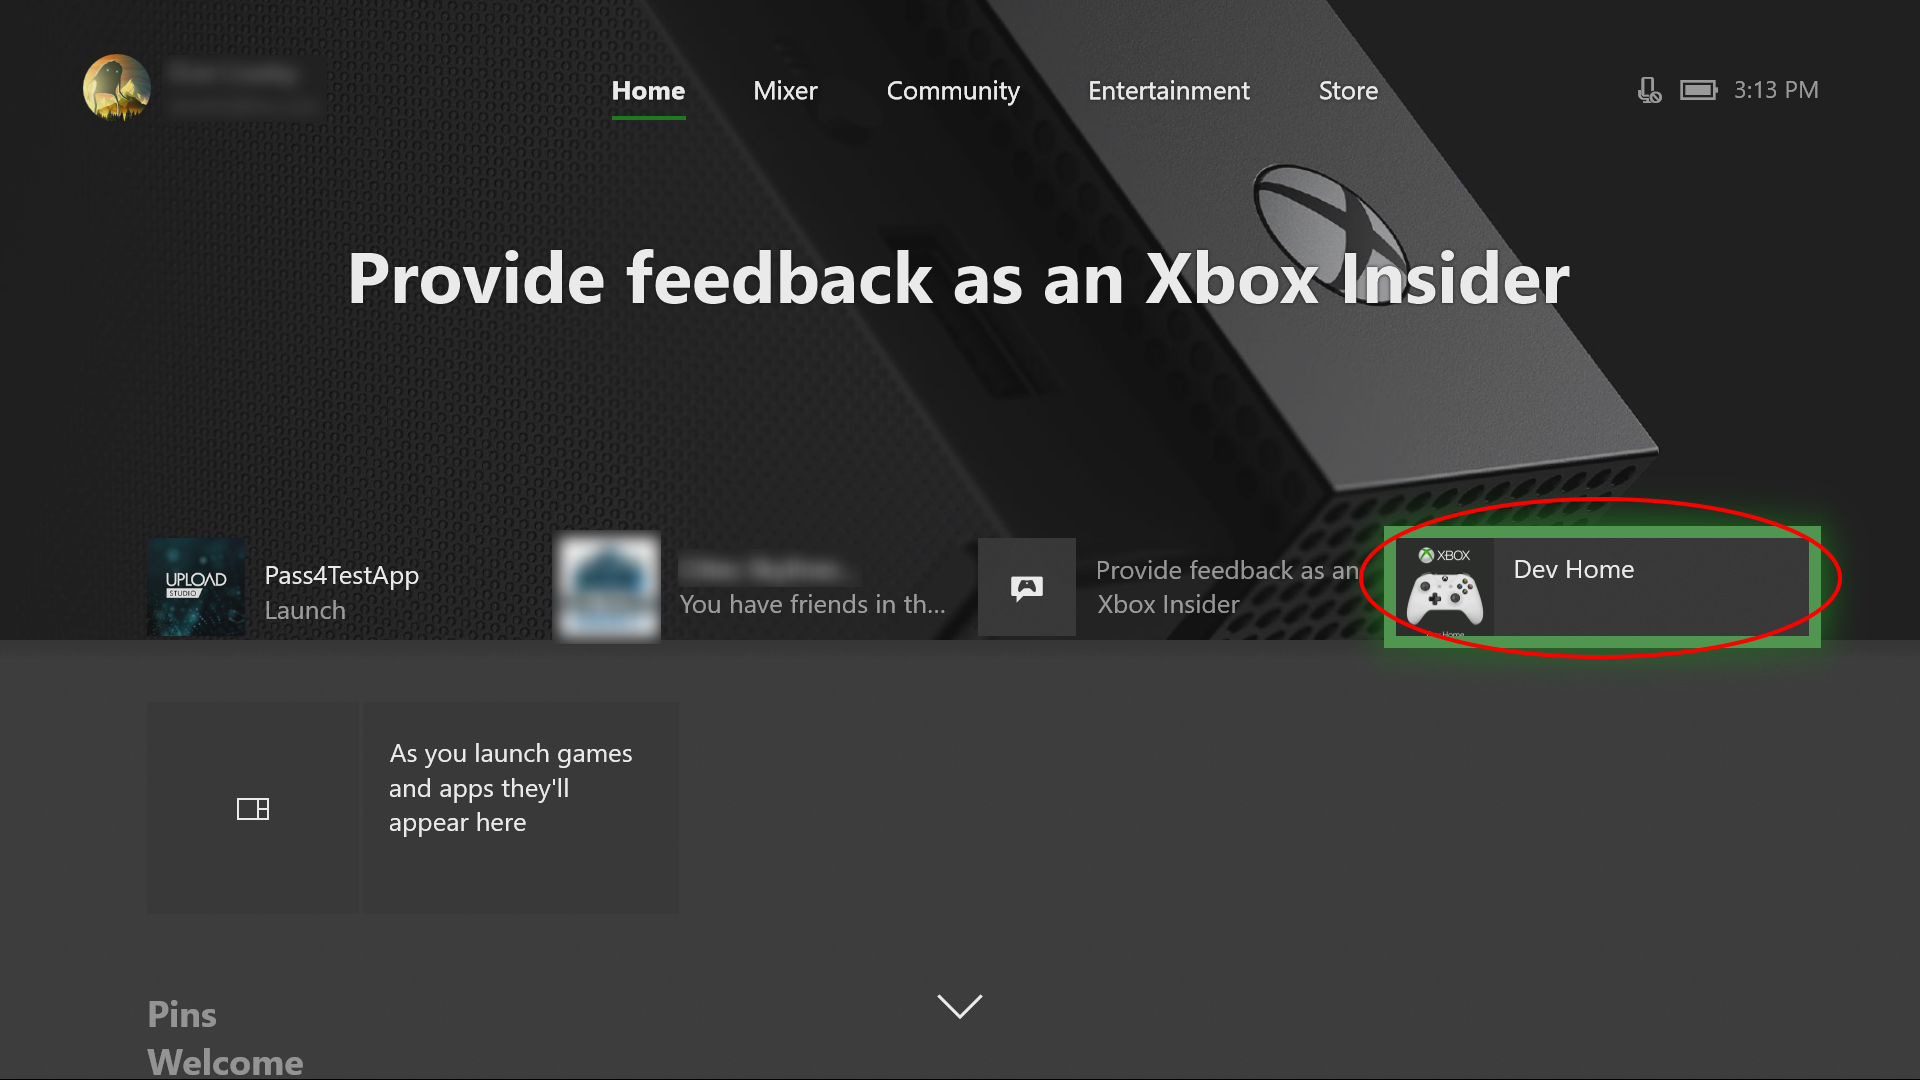 Device Portal per Xbox - UWP applications | Microsoft Learn